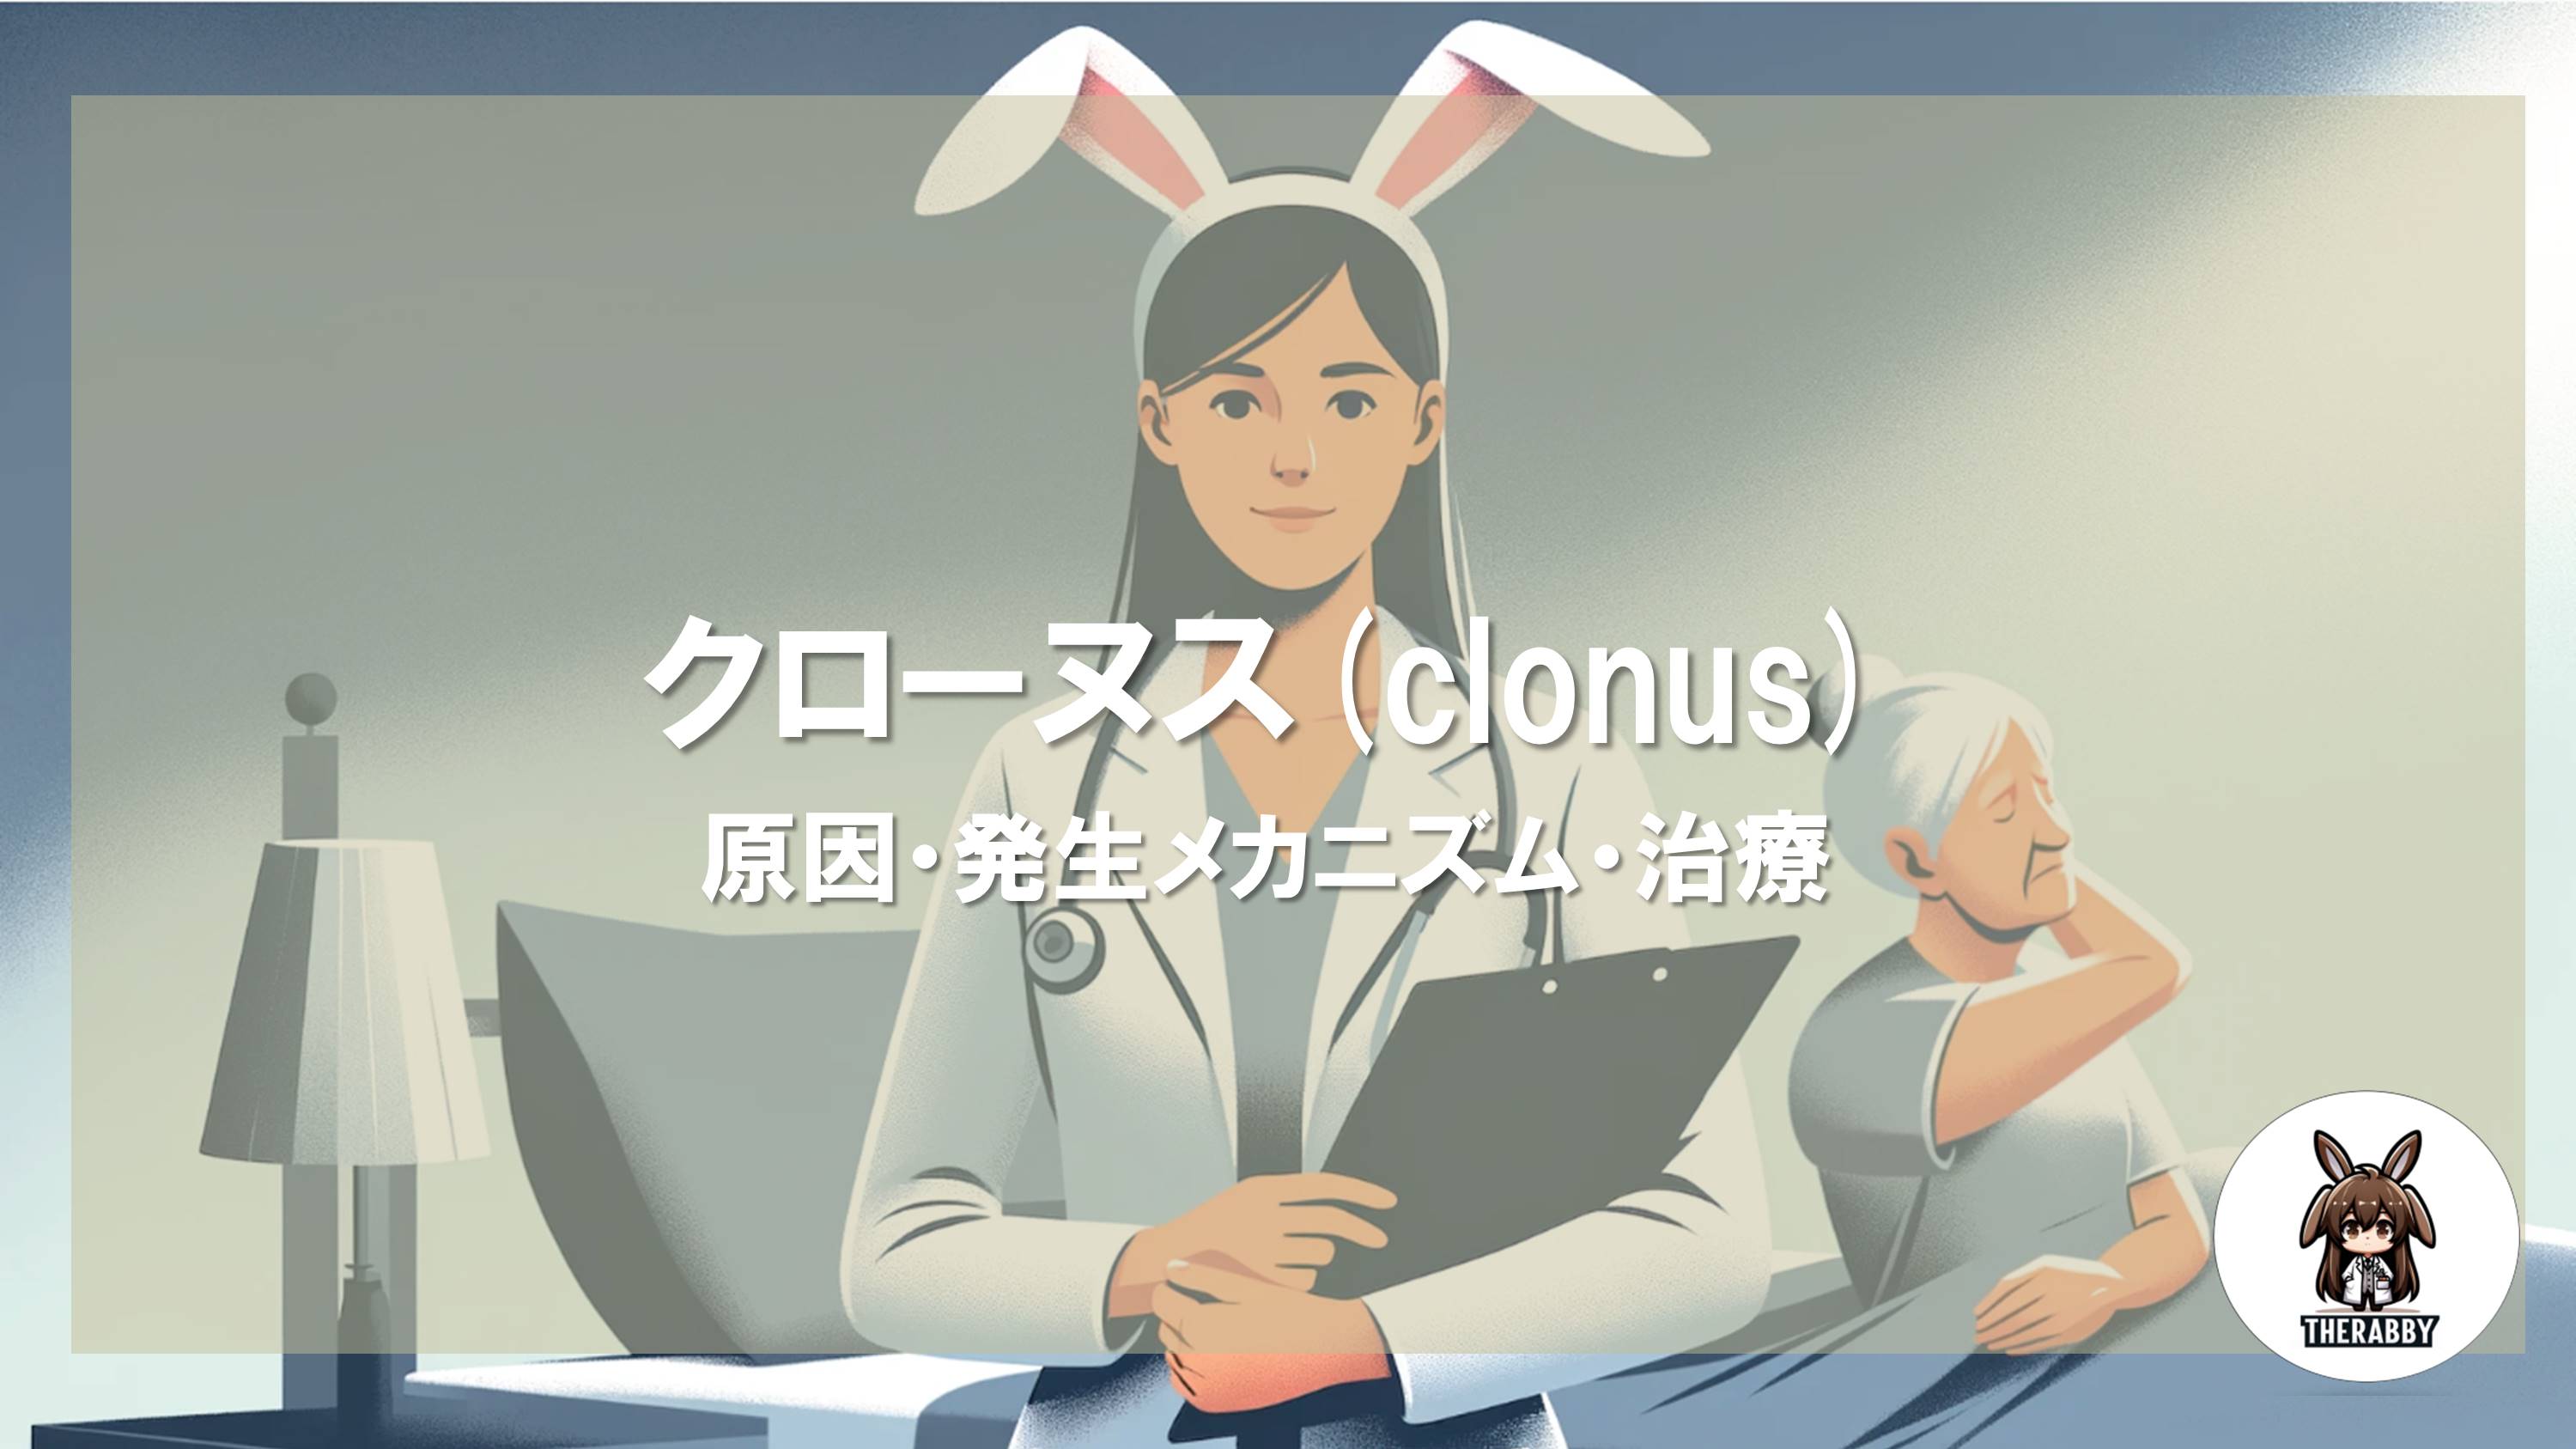 クローヌス(clonus) - 原因・発生メカニズム・治療